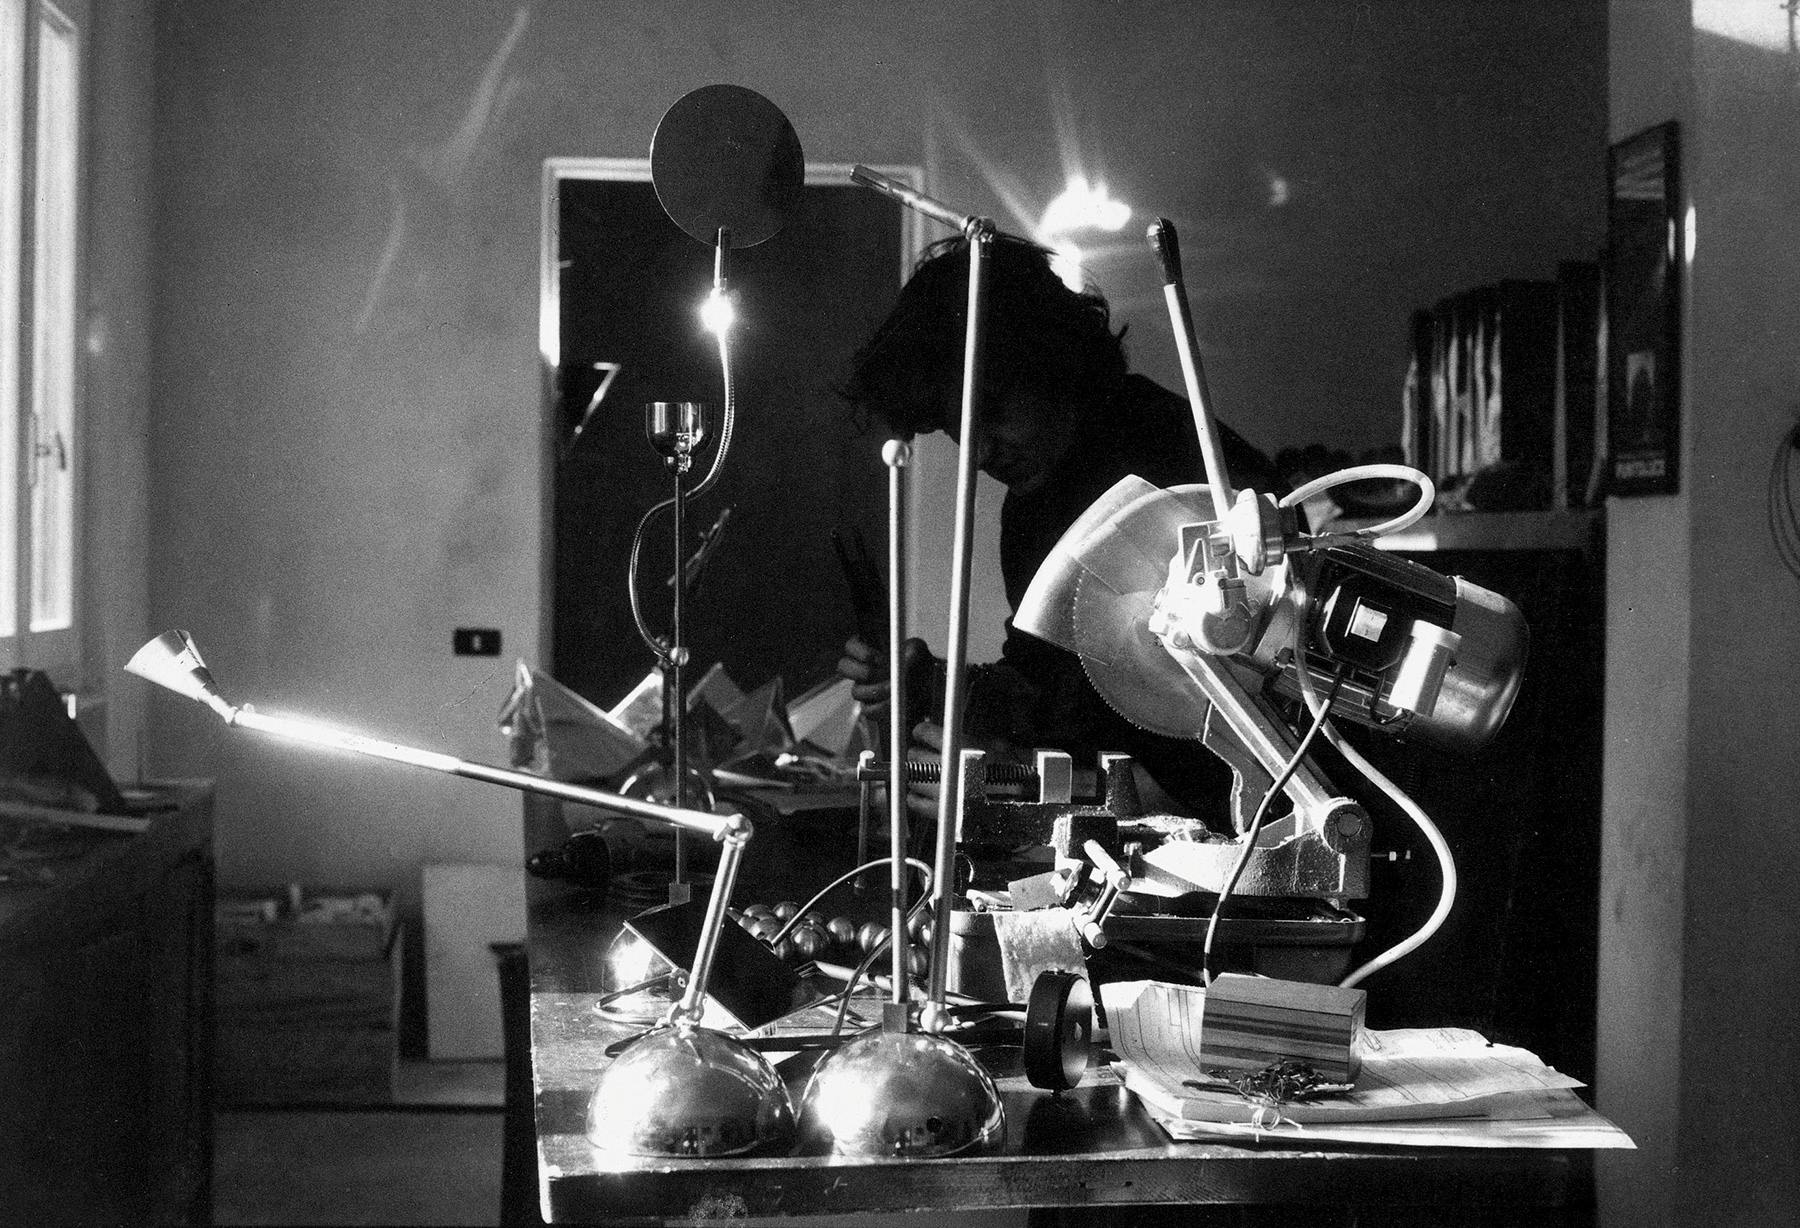 <p>Con Turciù y Albero della Luce, Enzo Catellani comienza su aventura tras crear las primeras lámparas que se incluyen en el catálogo «Oggetti senza Tempo», que ante todo potencian la posibilidad de interacción con el objeto-sujeto lámpara.</p>
